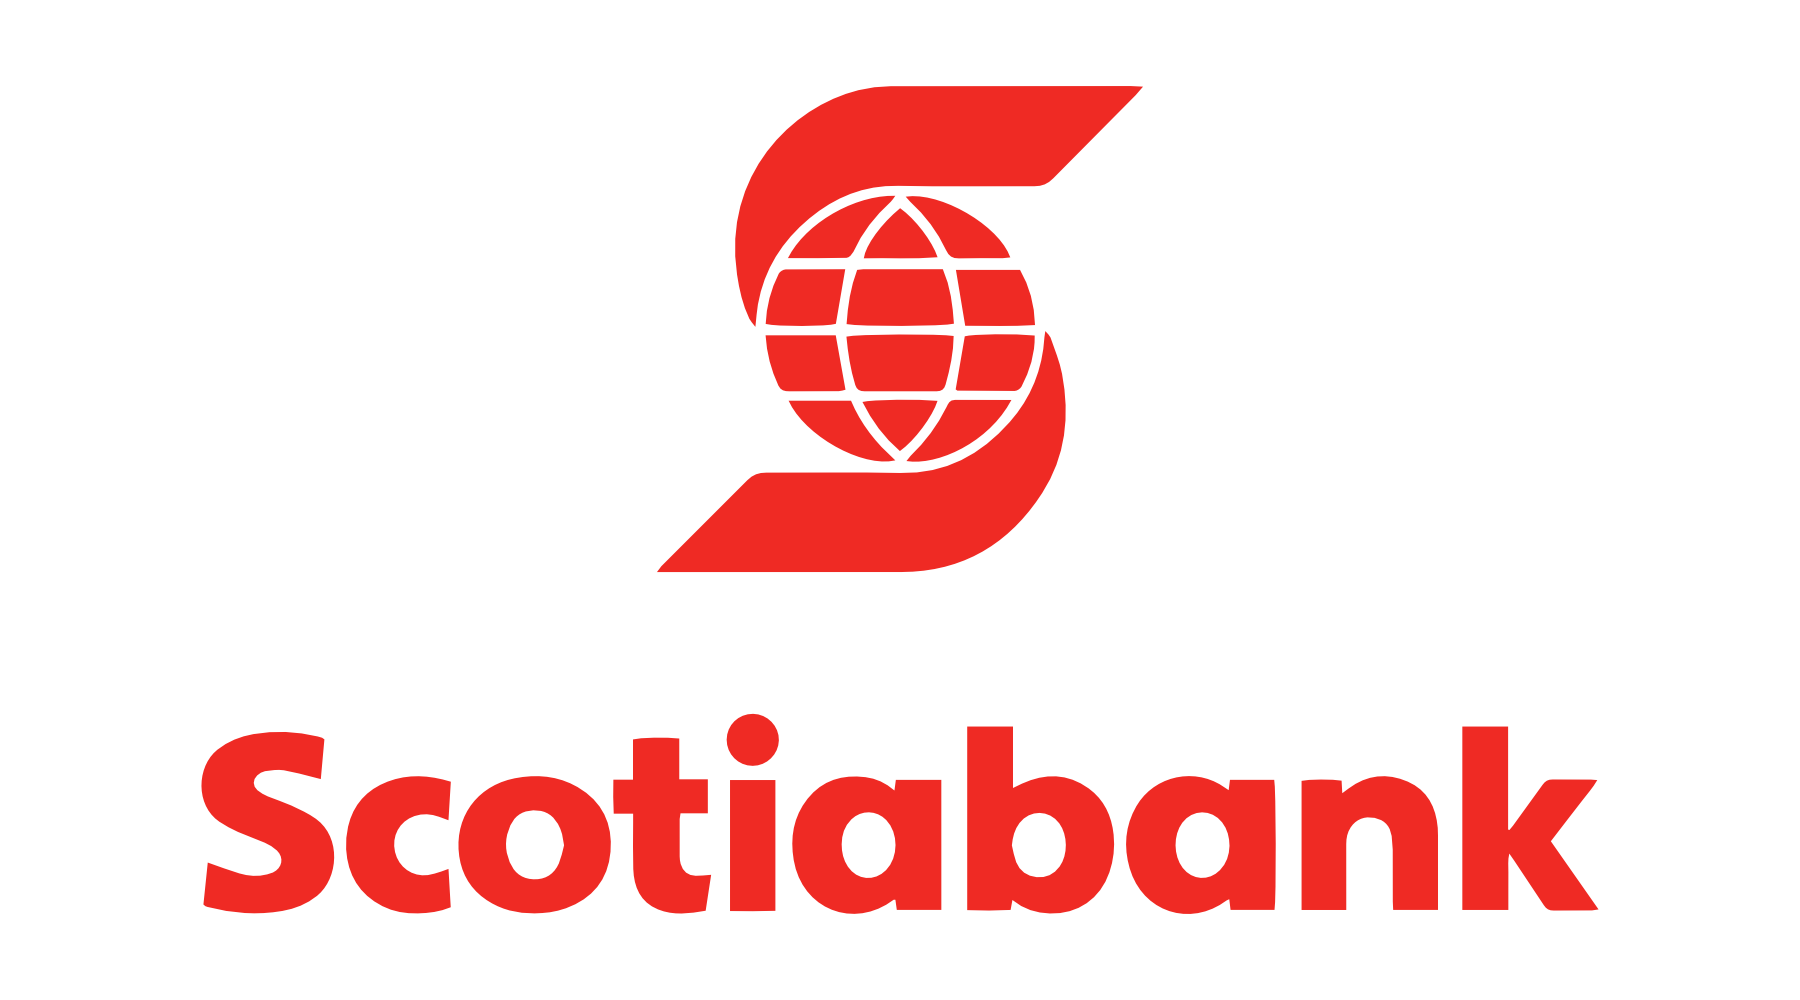 Tarjeta de débito Scotiabank